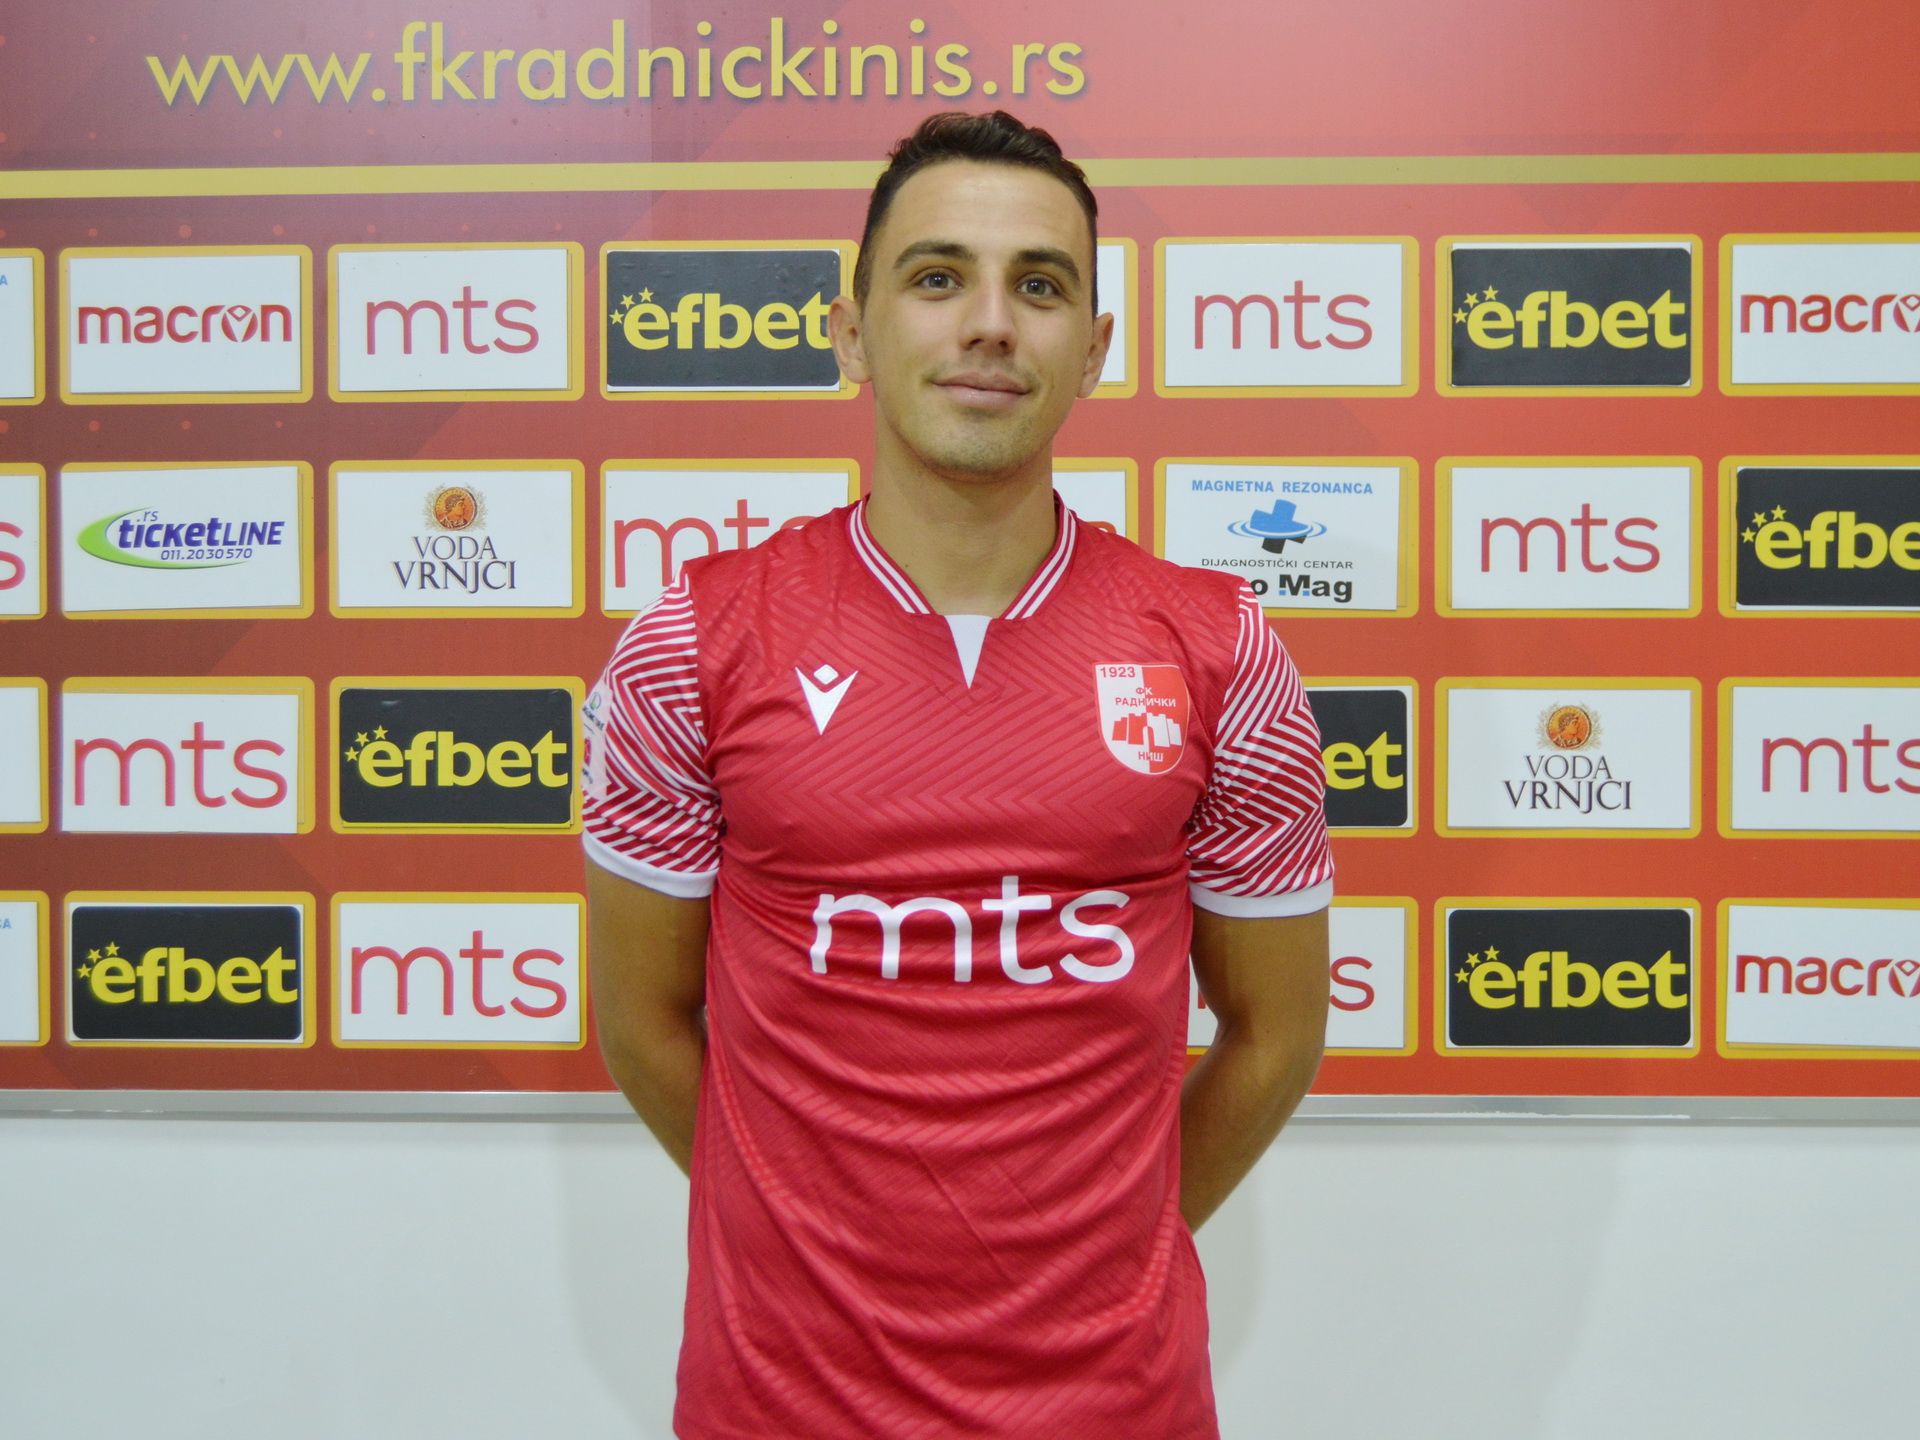 FK Radnički Niš - Naš defanzivac Aleksandar Todorovski slavi svoj 36.  rođendan. Želimo mu puno sreće,, uspeha i radosti 🎉🎊🎁